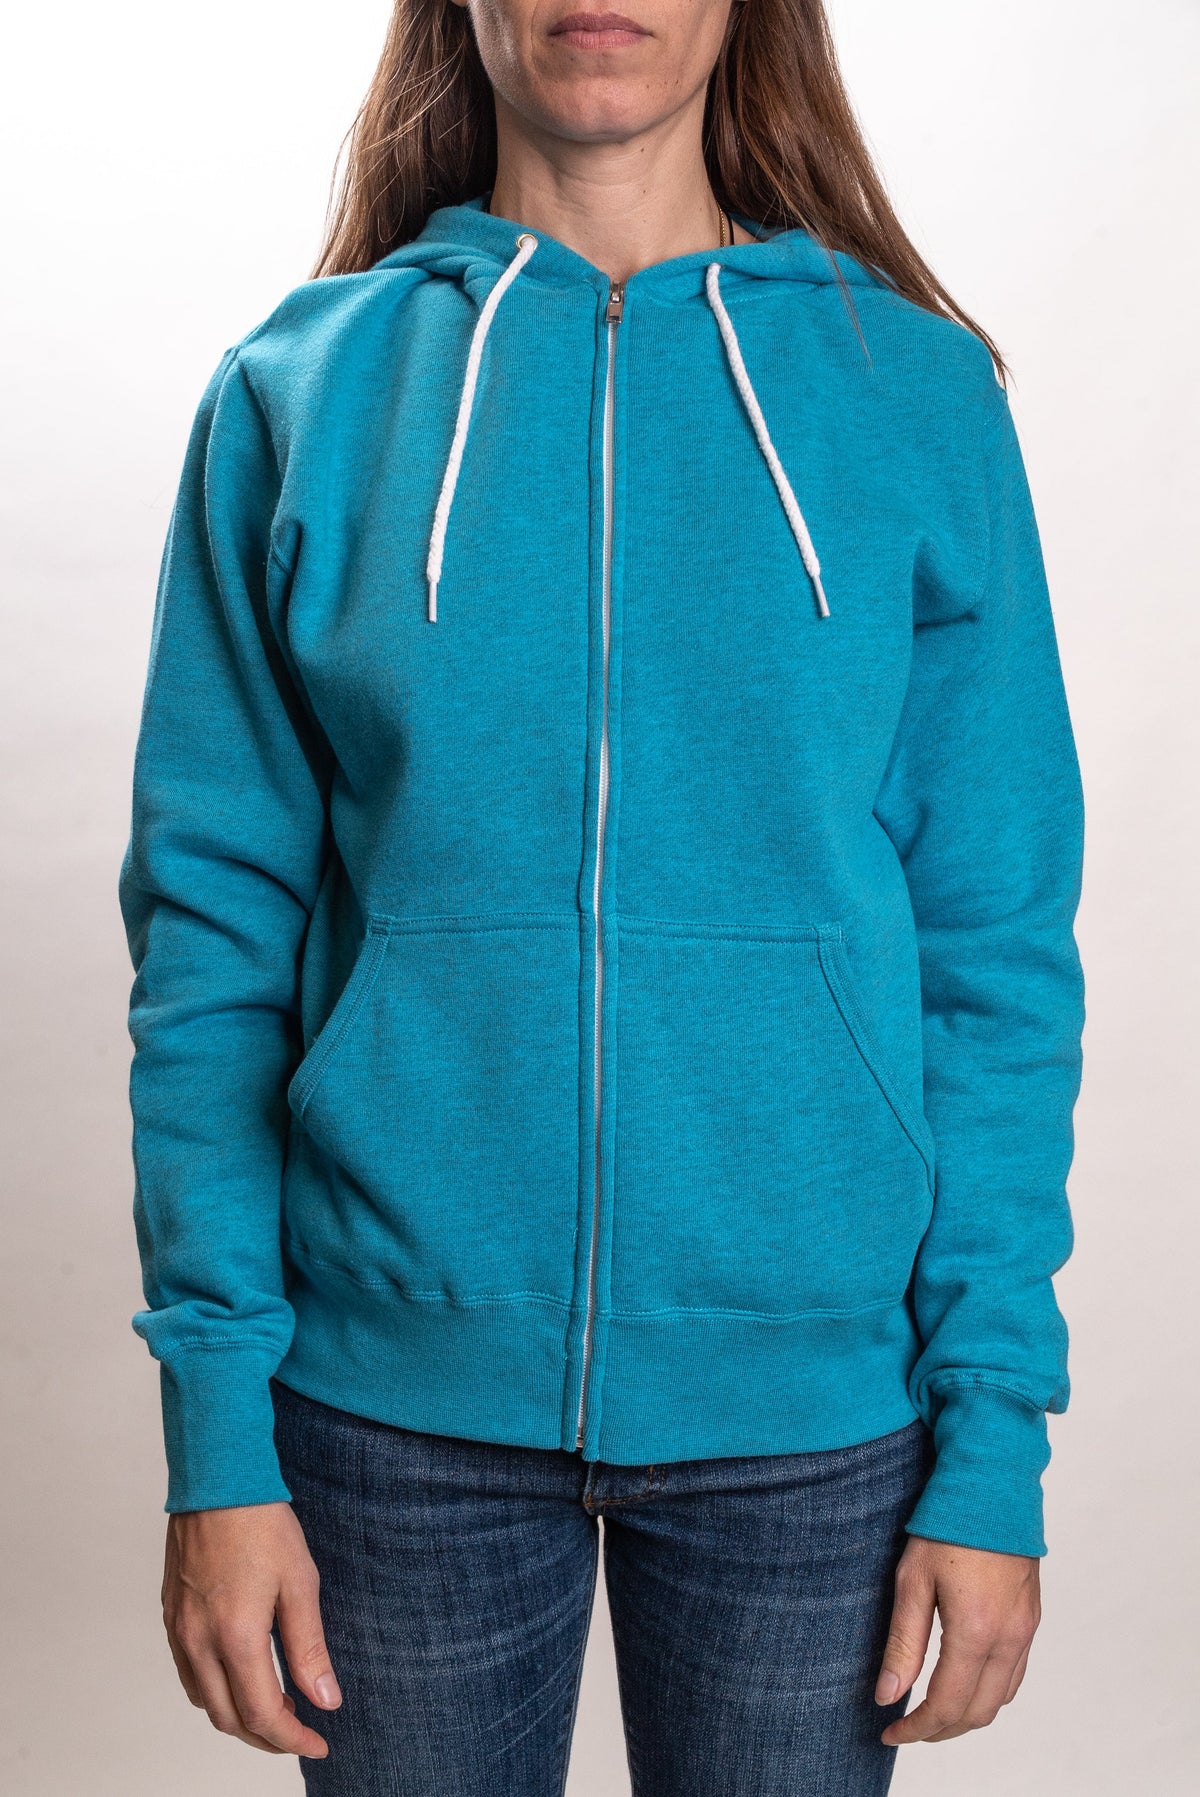 AFX90UNZ - Unisex Zip Hooded Sweatshirt